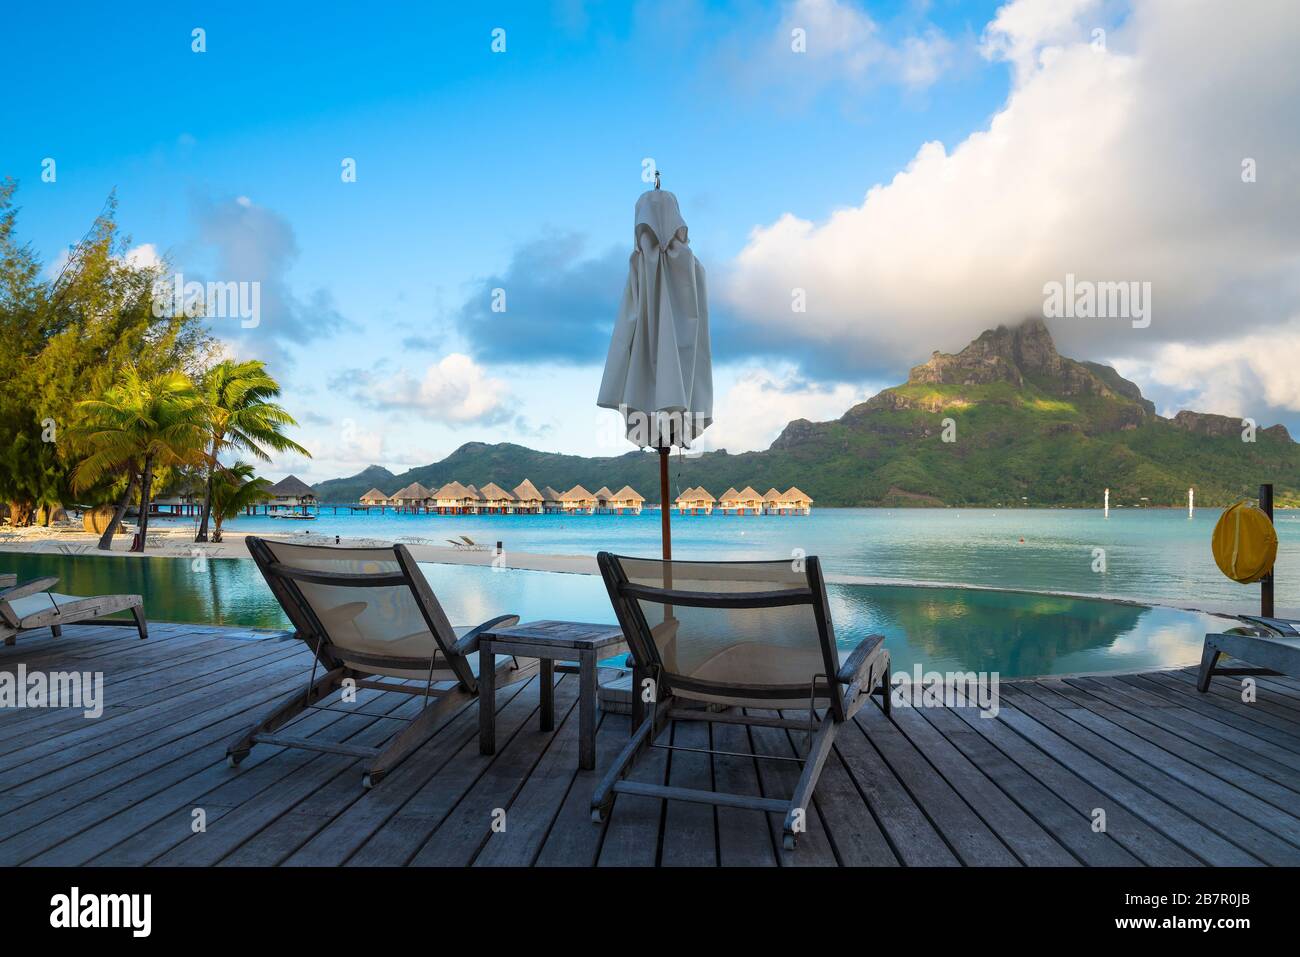 Morning in Bora Bora, Tahiti Stock Photo